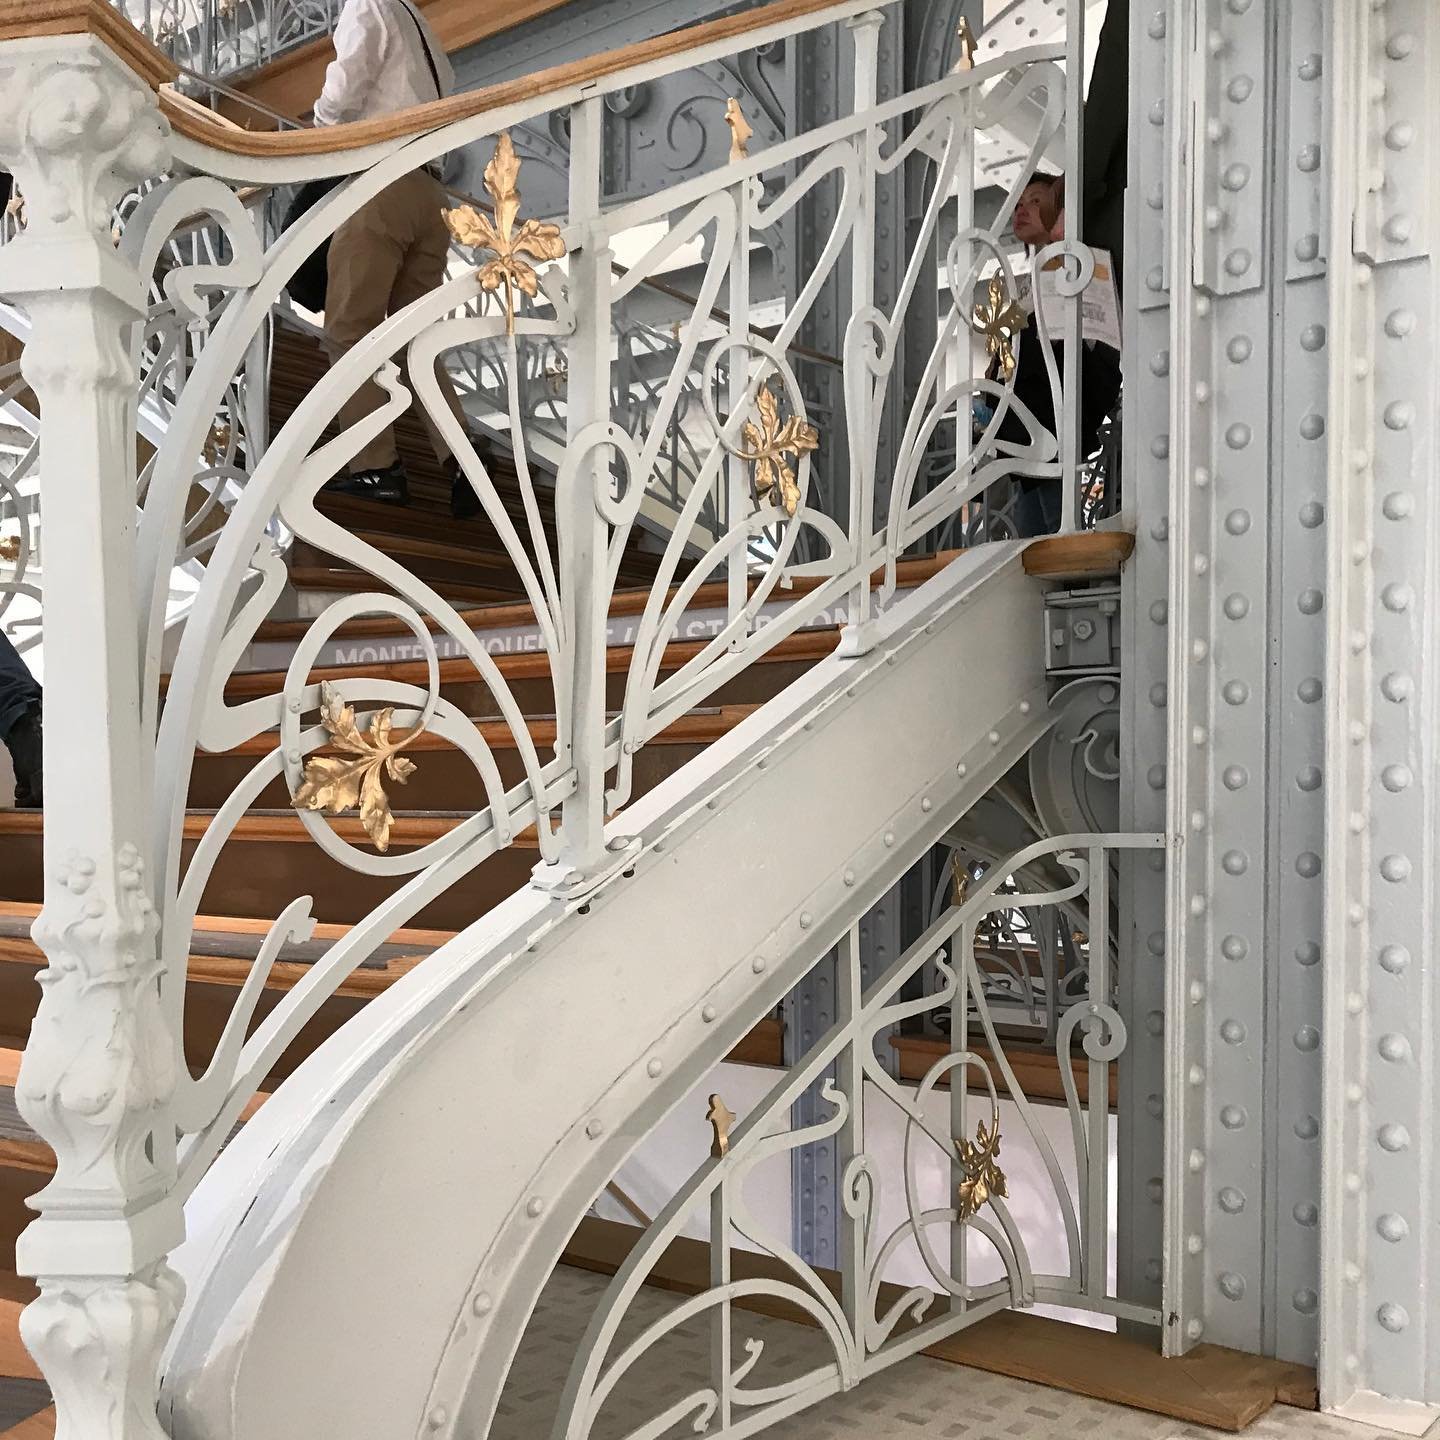 Samaritaine-Art-Nouveau-Staircase-3.jpg